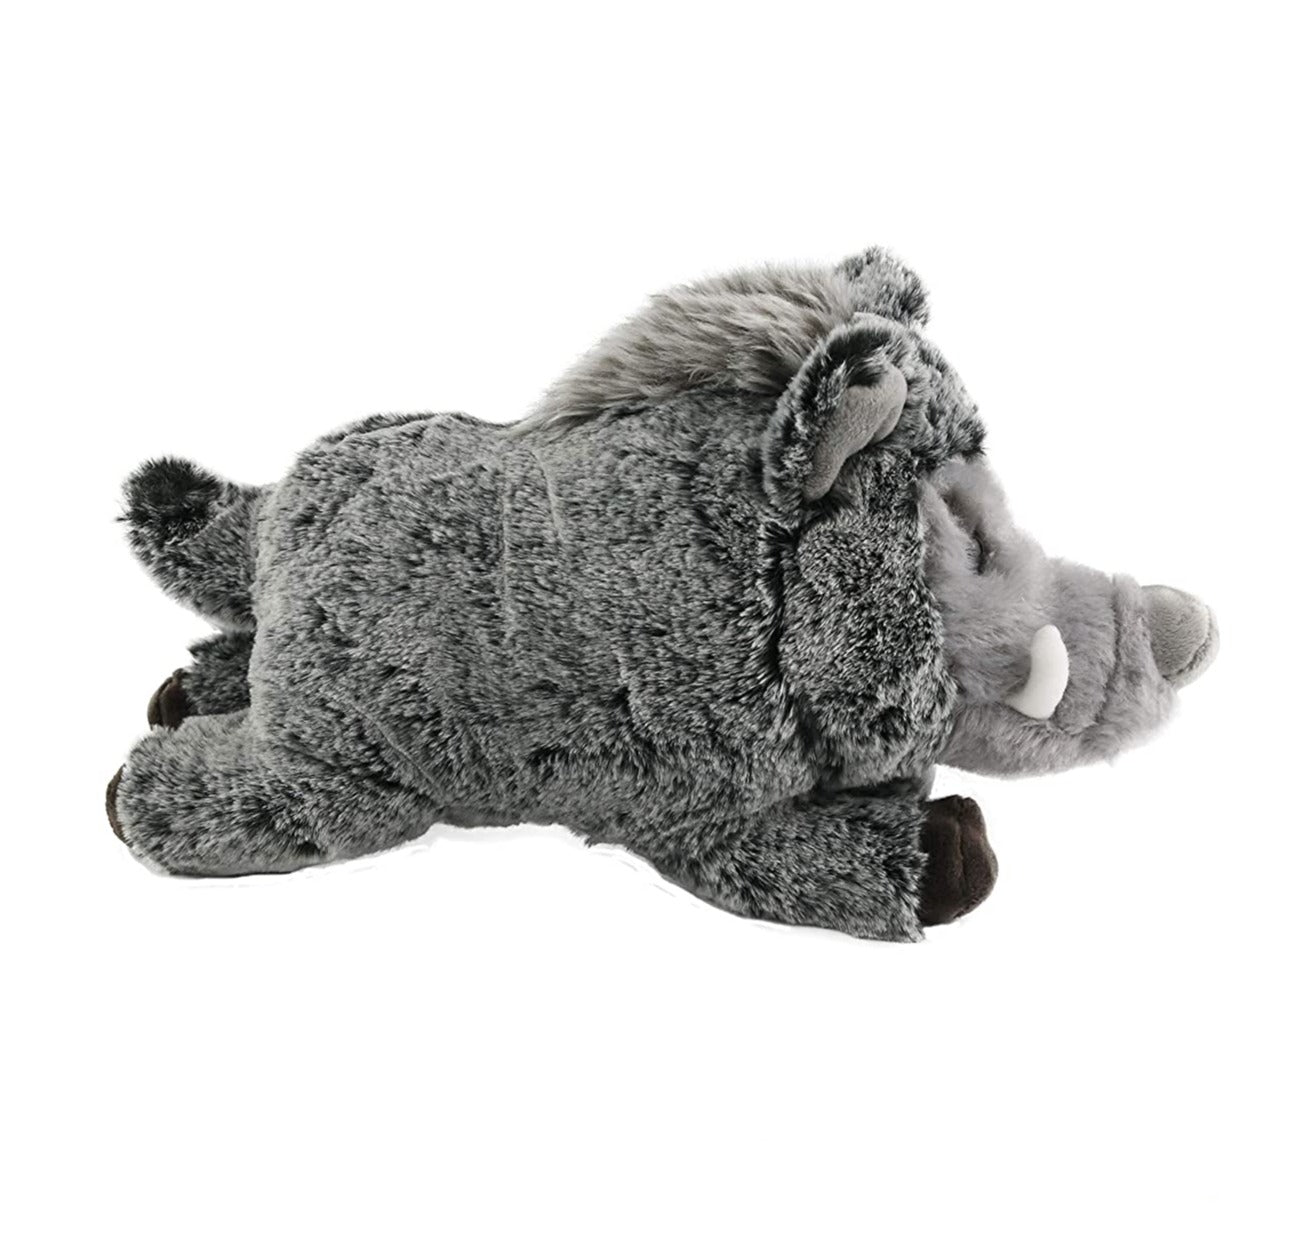 Wild Boar Pig Soft Stuffed Plush Toy